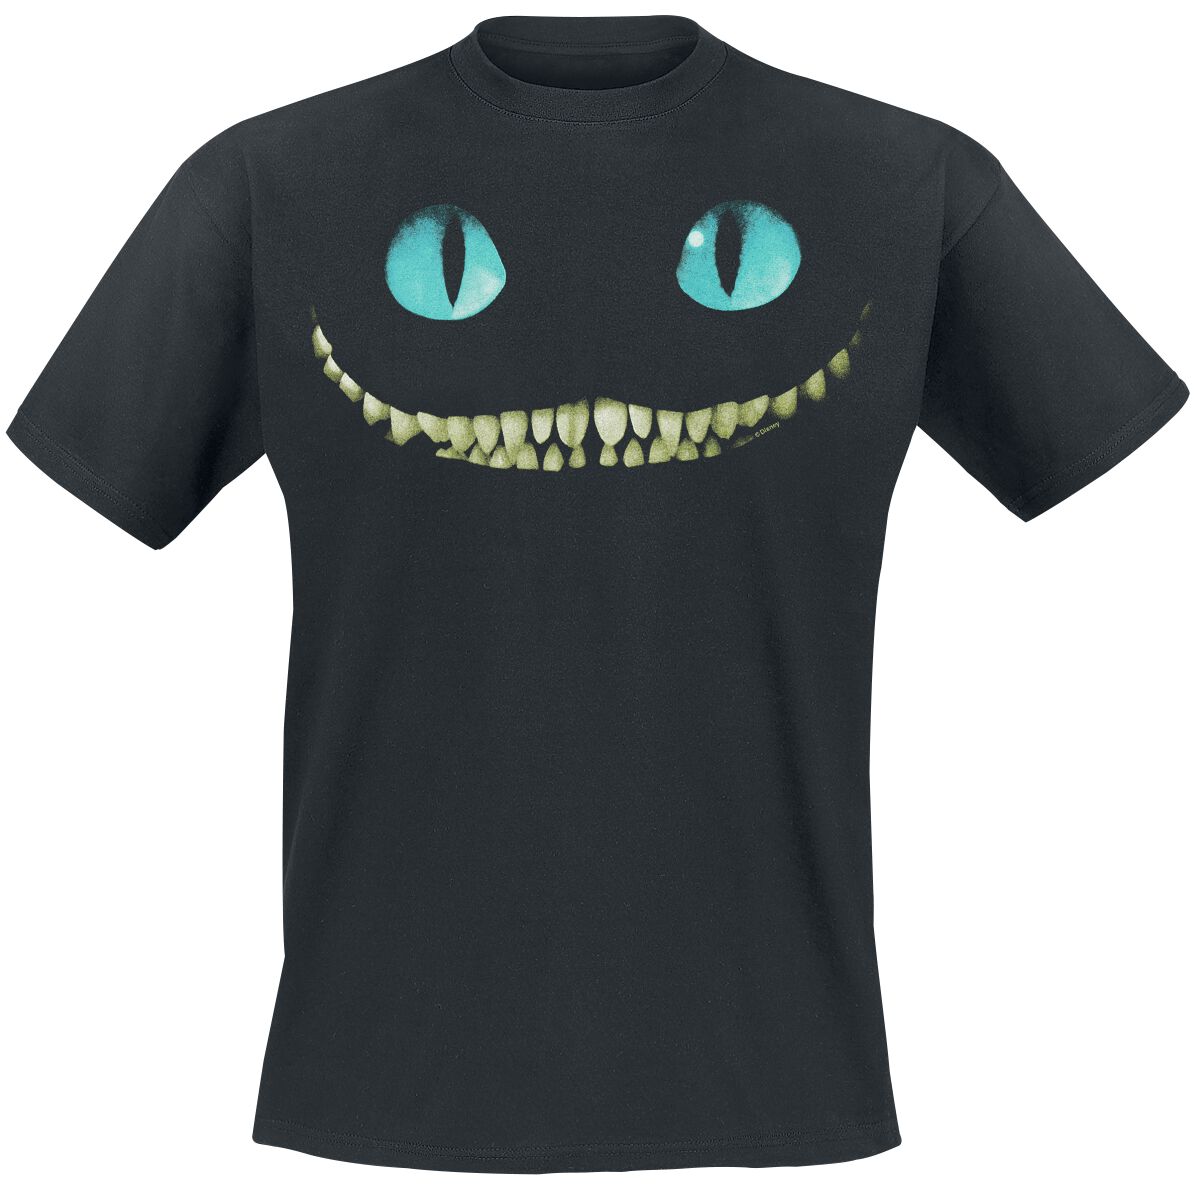 Alice im Wunderland - Disney T-Shirt - Grinsekatze - Lächeln - S bis XL - für Männer - Größe S - schwarz  - Lizenzierter Fanartikel